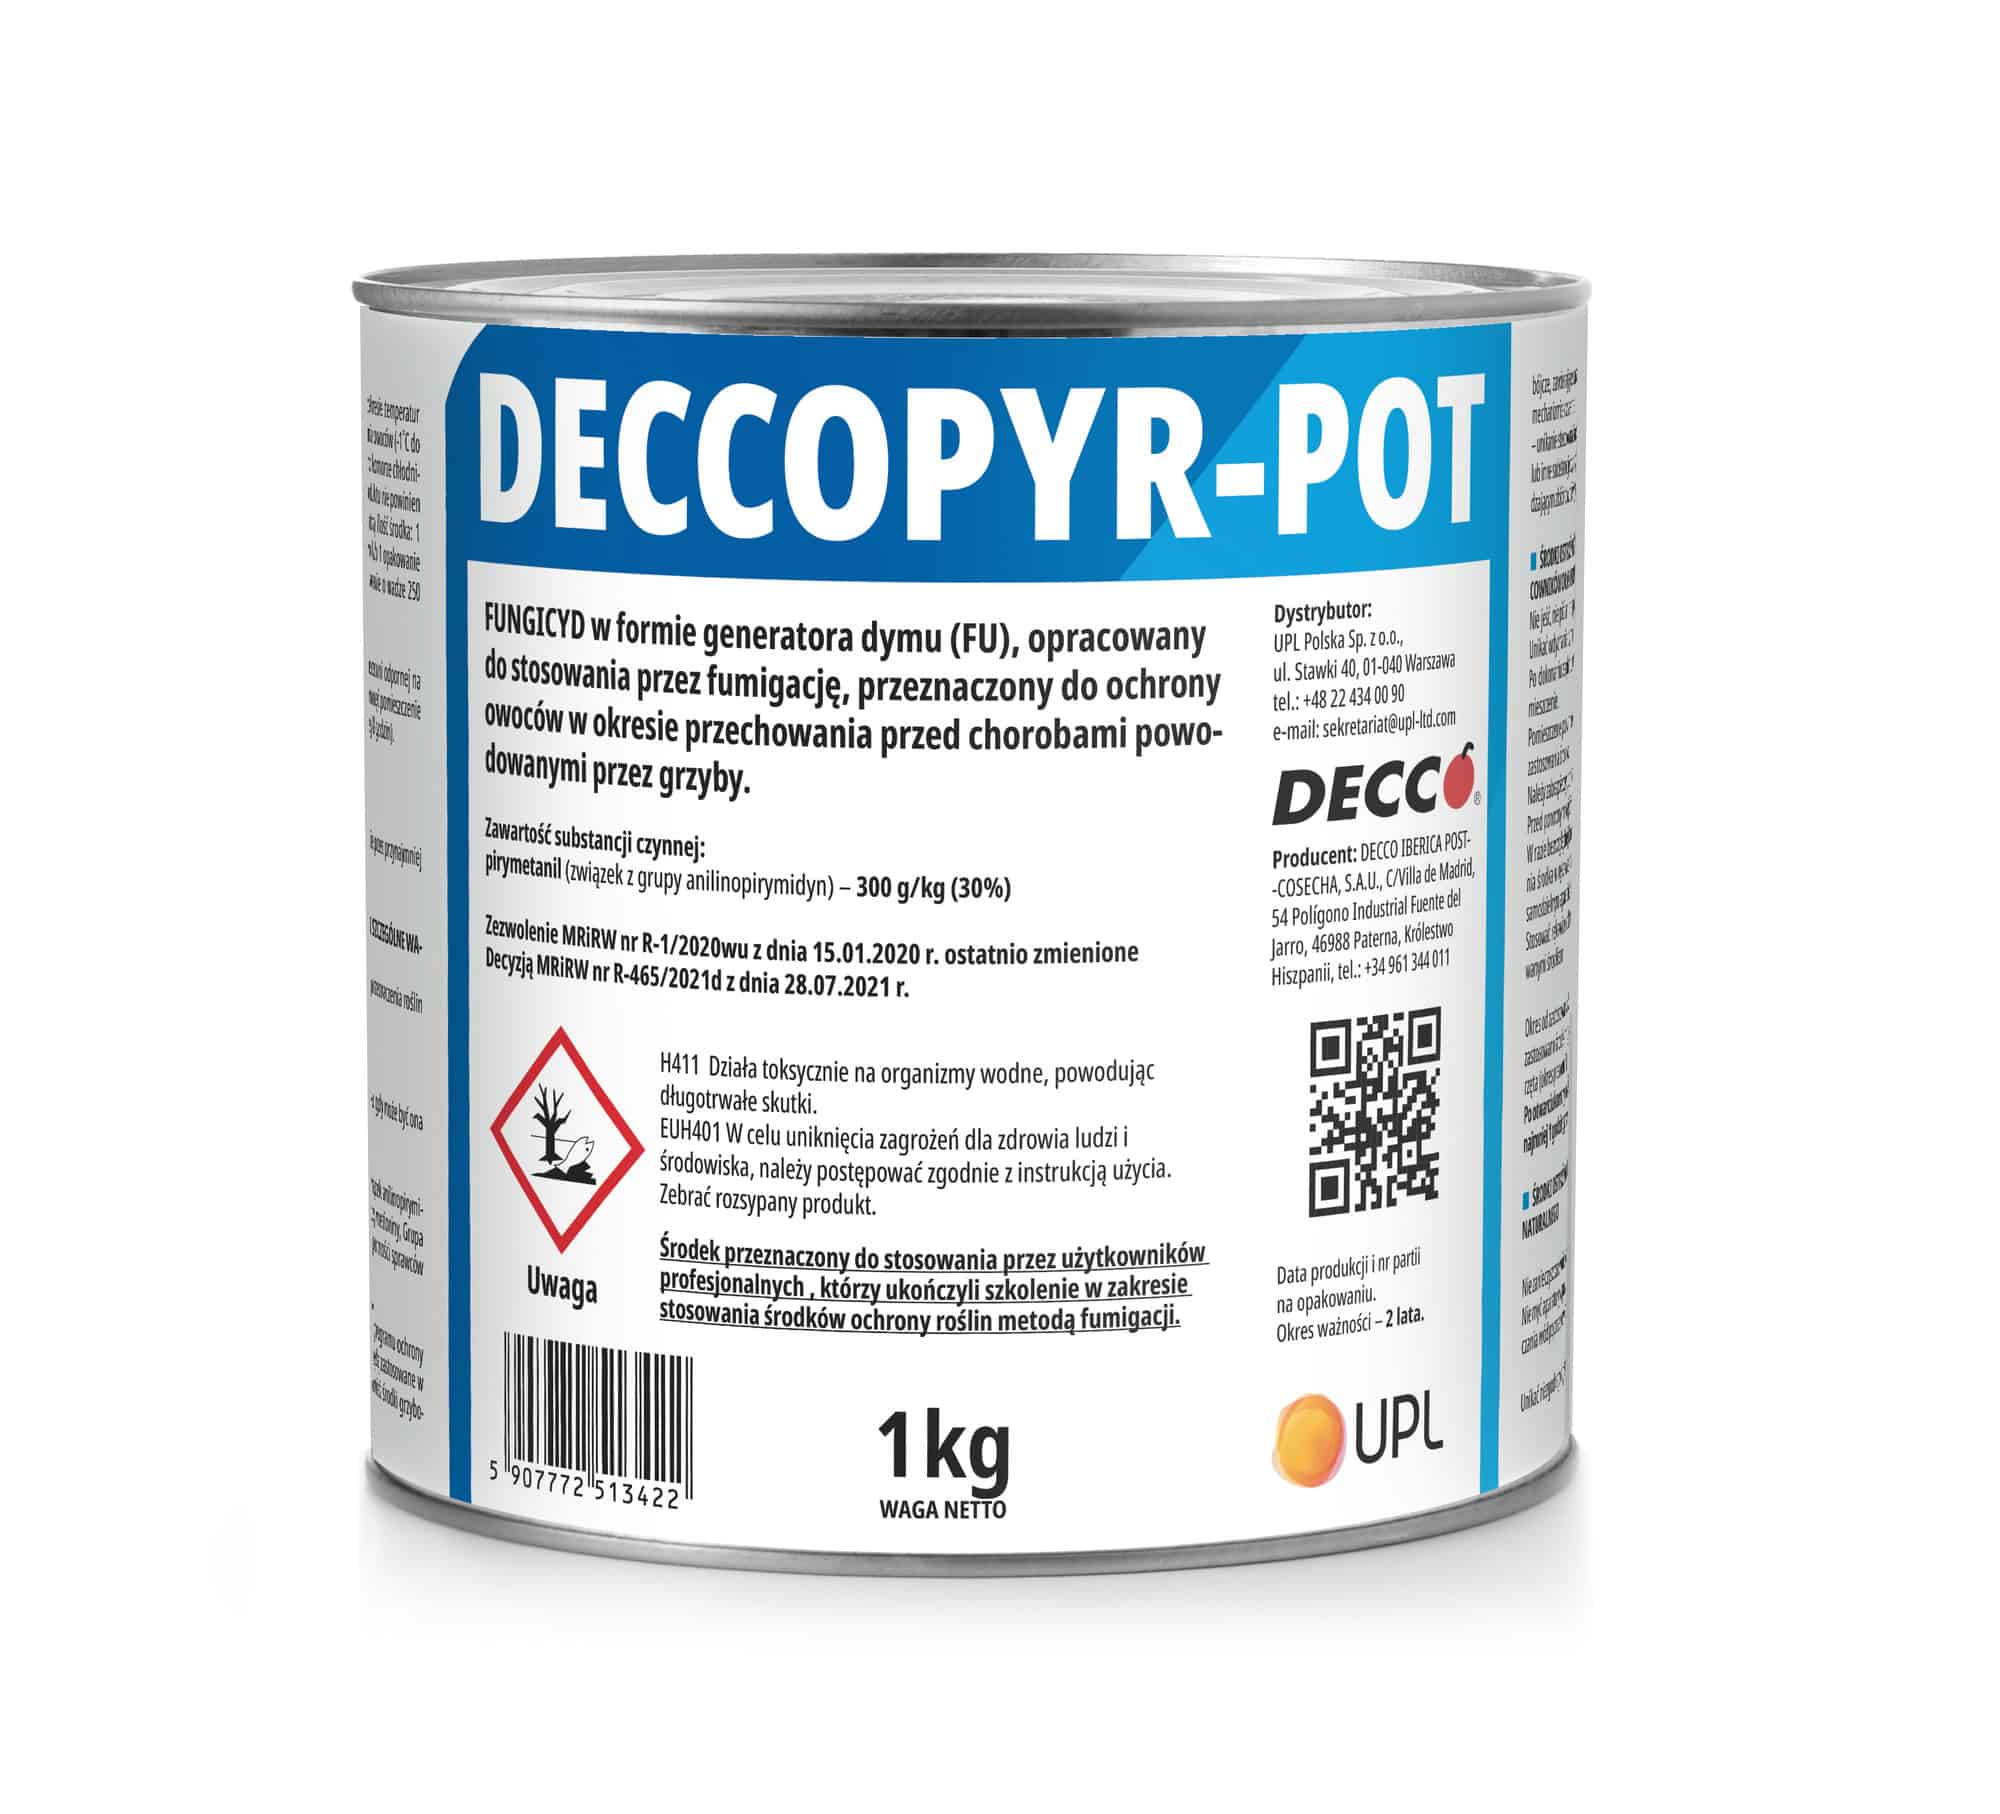 DeccoPyr-Pot-1-kg-puszka-UPL.jpg